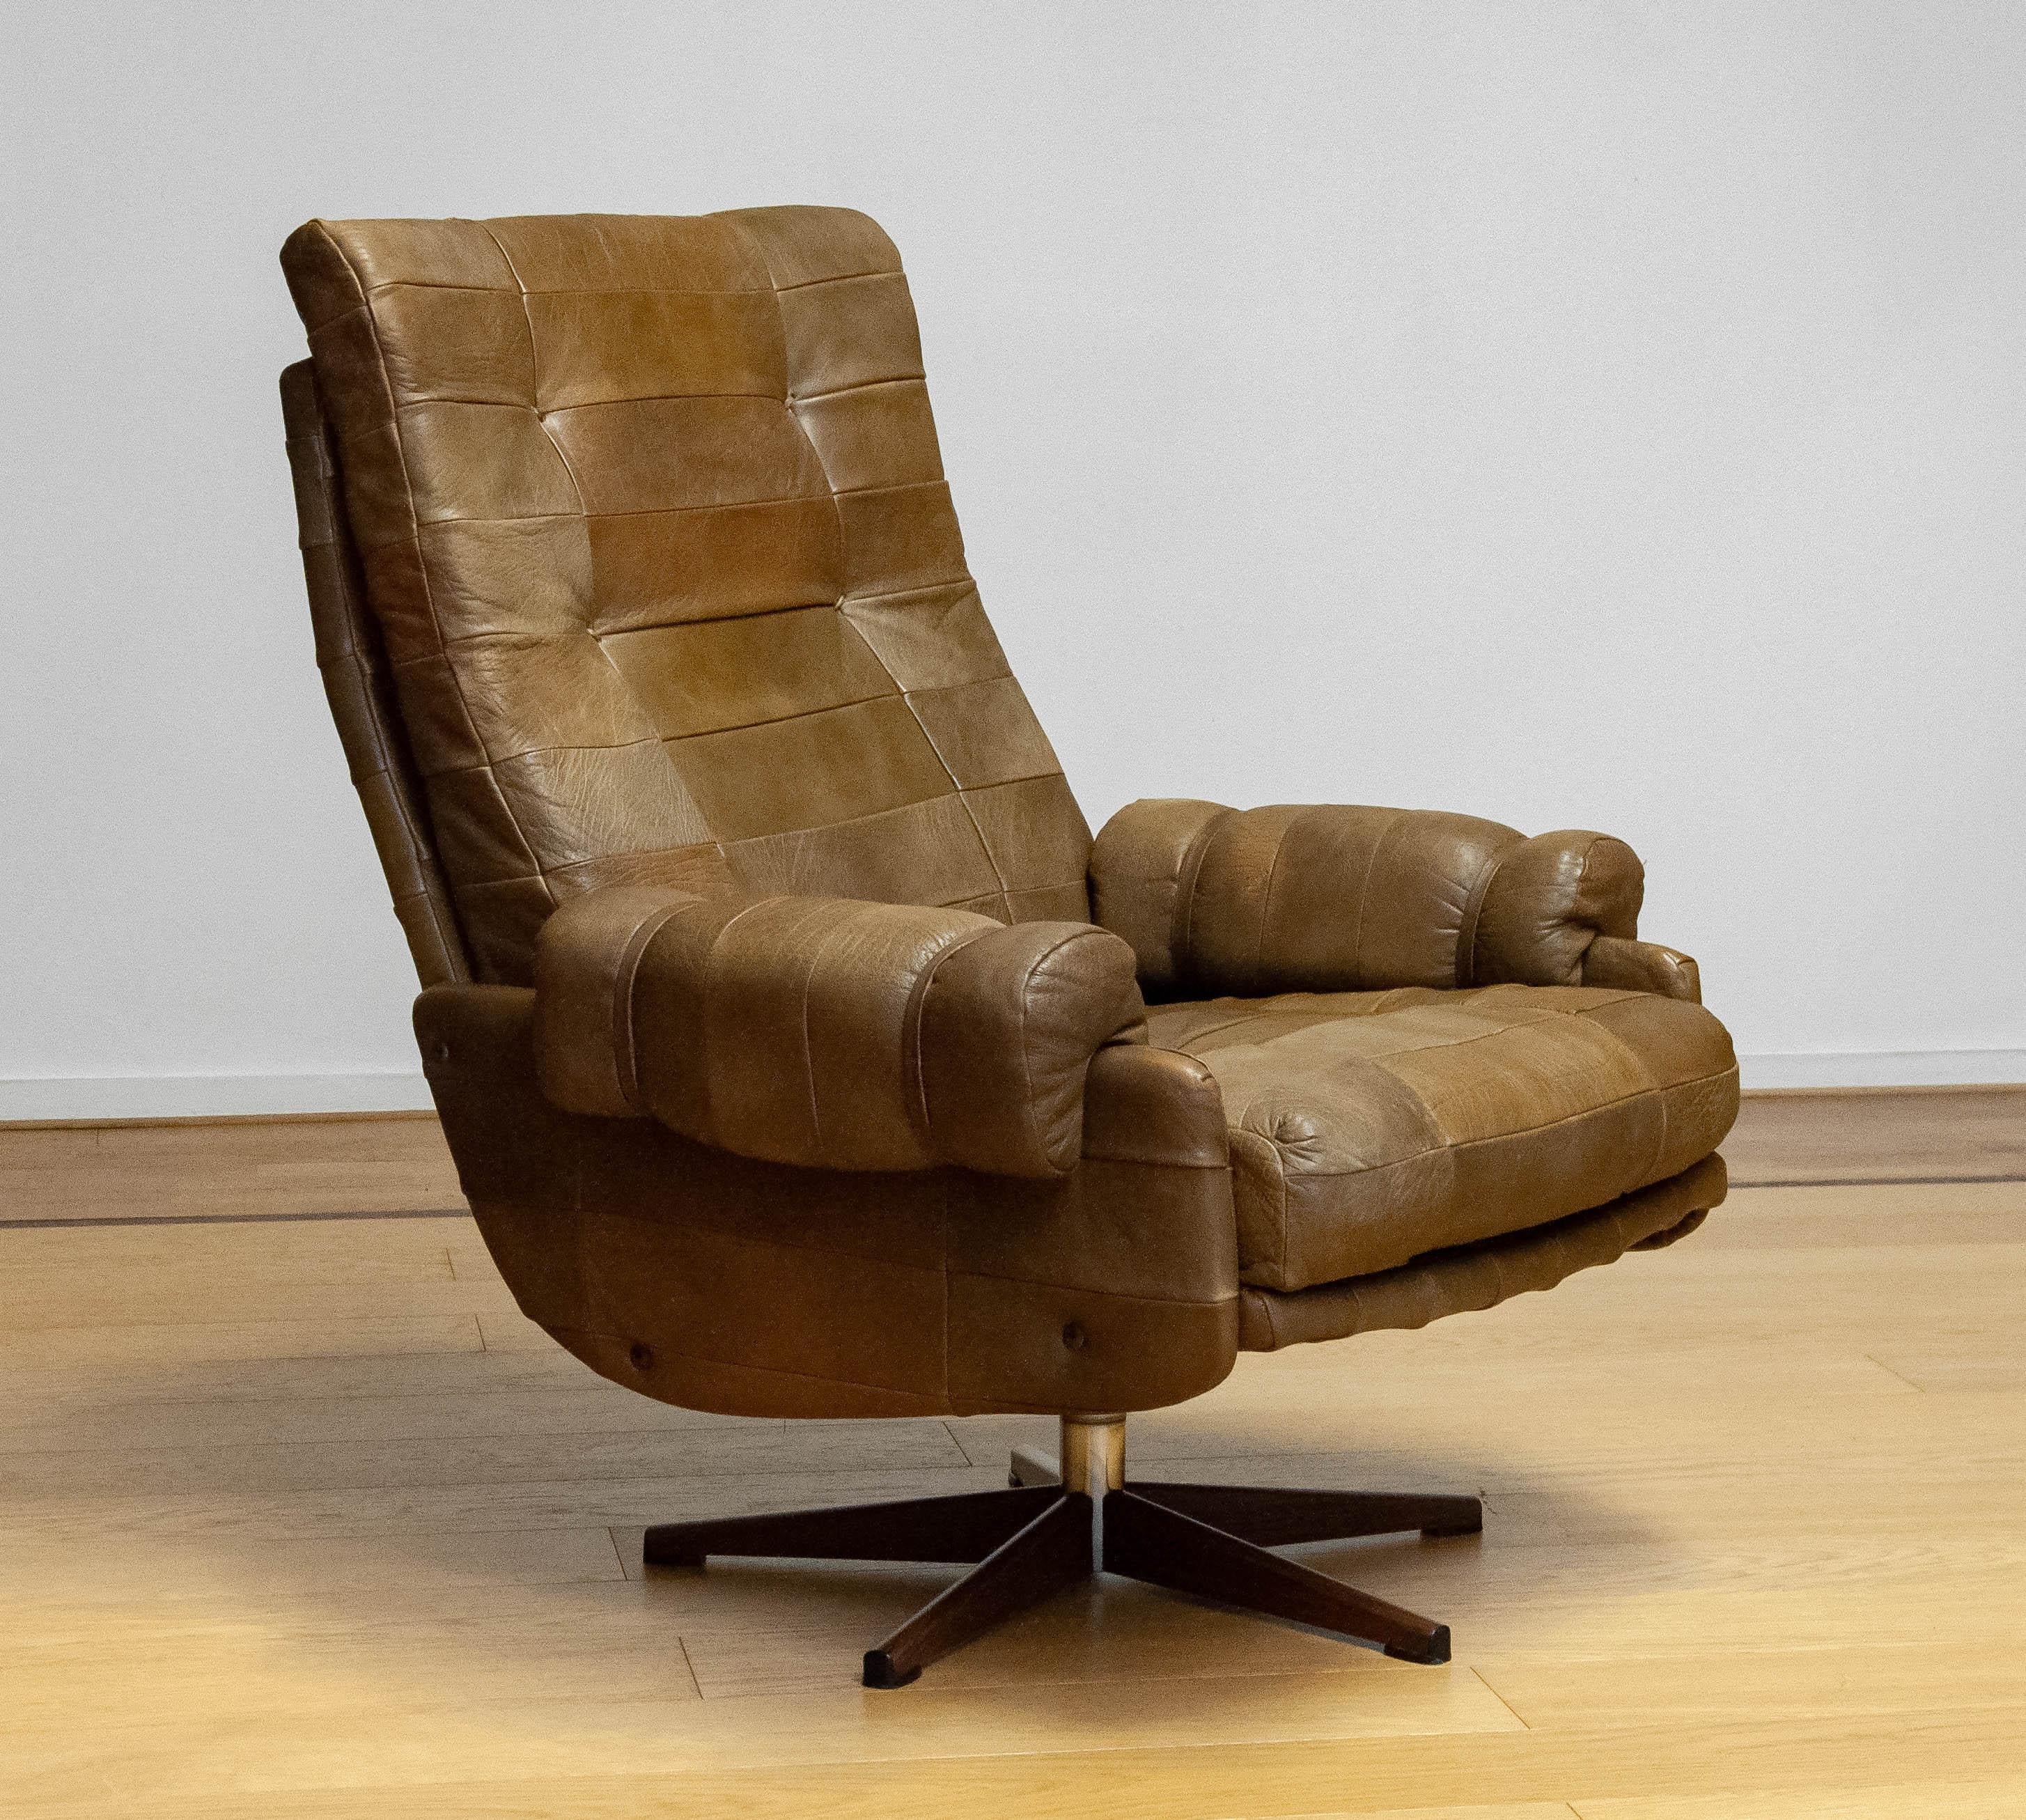 Äußerst bequemer Drehstuhl von Arne Norell für Norell Möbler AB in Schweden. Der Stuhl ist mit schönem und robustem olivgrünen (Patchwork-) Büffelleder gepolstert. Der Stuhl stützt sehr gut und ist wie geschaffen für lange Sitz-/Ruhephasen (Filme